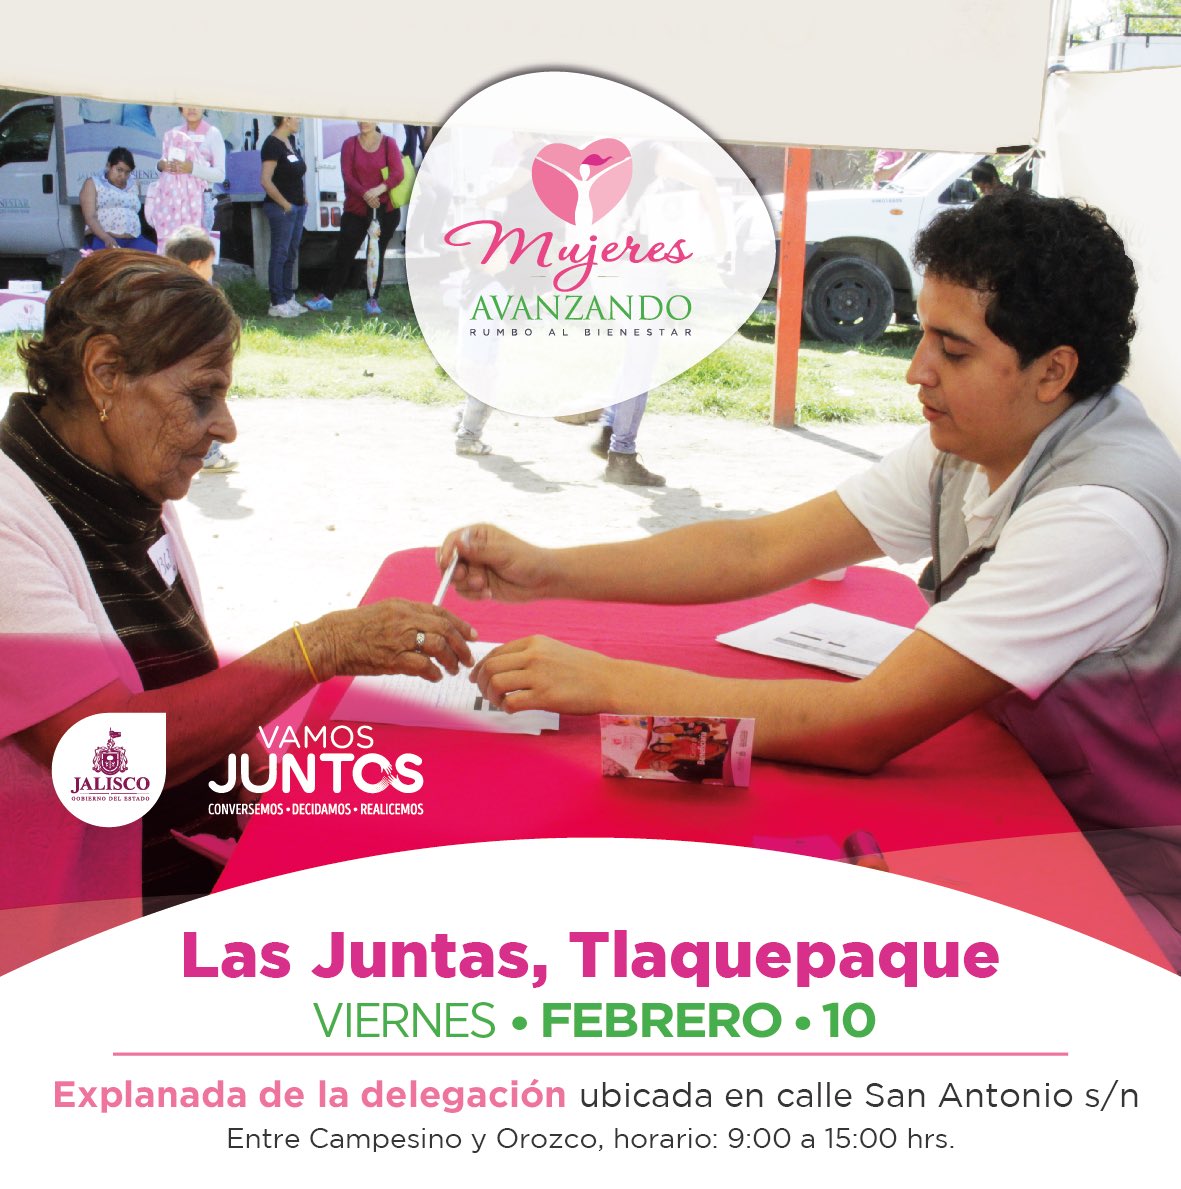 Este viernes estaremos brindando servicios médicos gratuitos a través de #MujeresAvanzando en la colonia Las Juntas, en Tlaquepaque